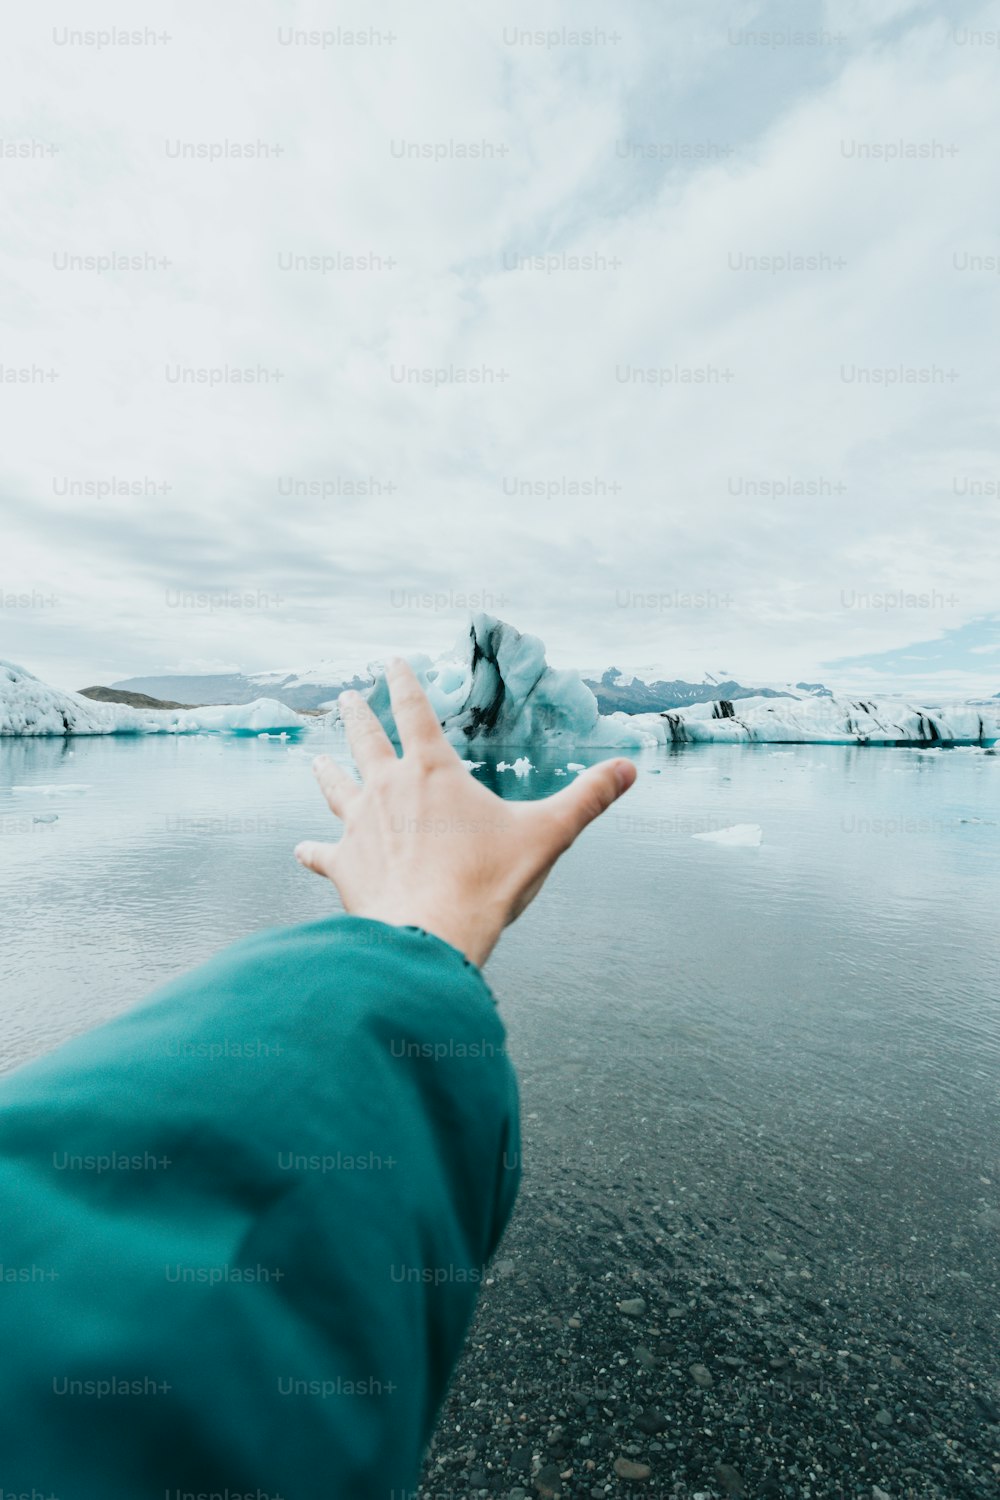 La mano de una persona alcanzando un iceberg en el agua